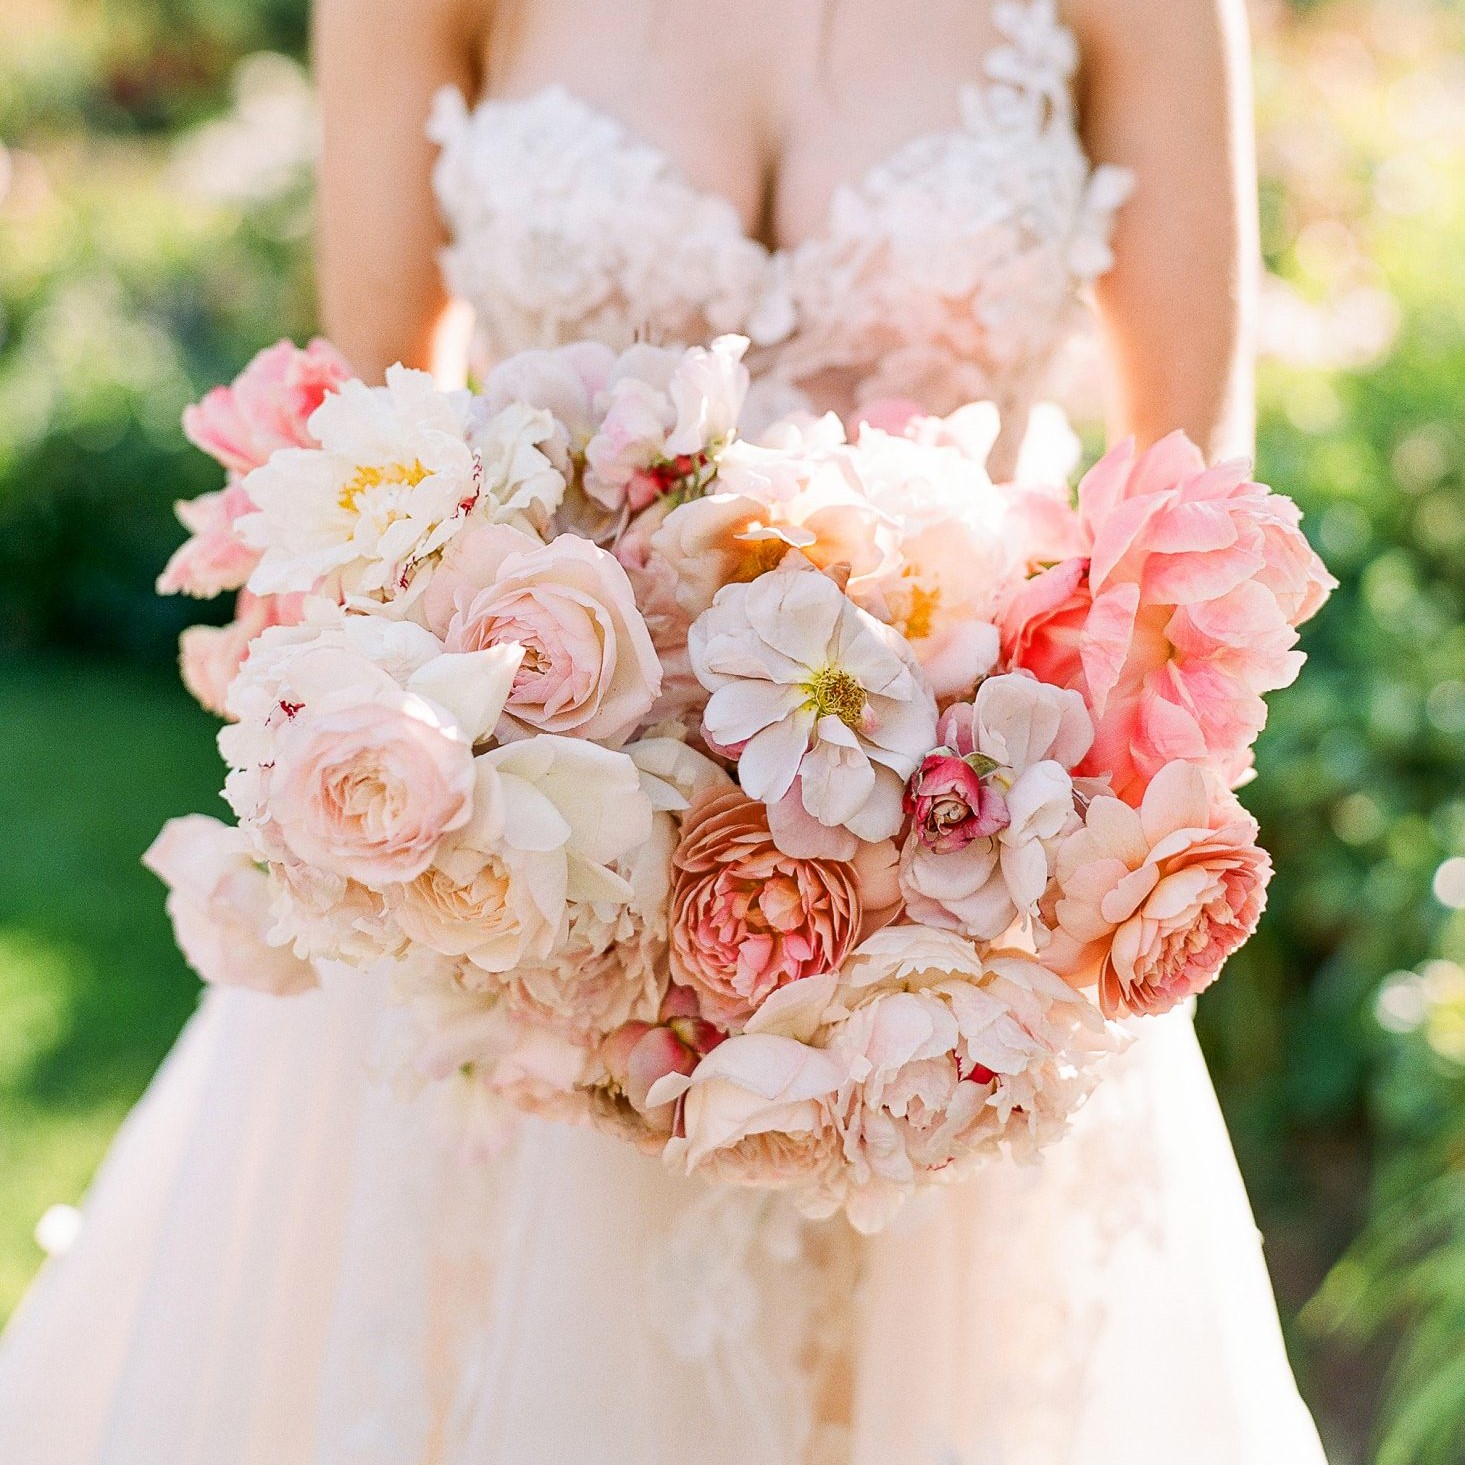 Hoa cưới - Ý nghĩa ẩn trong mỗi bó hoa